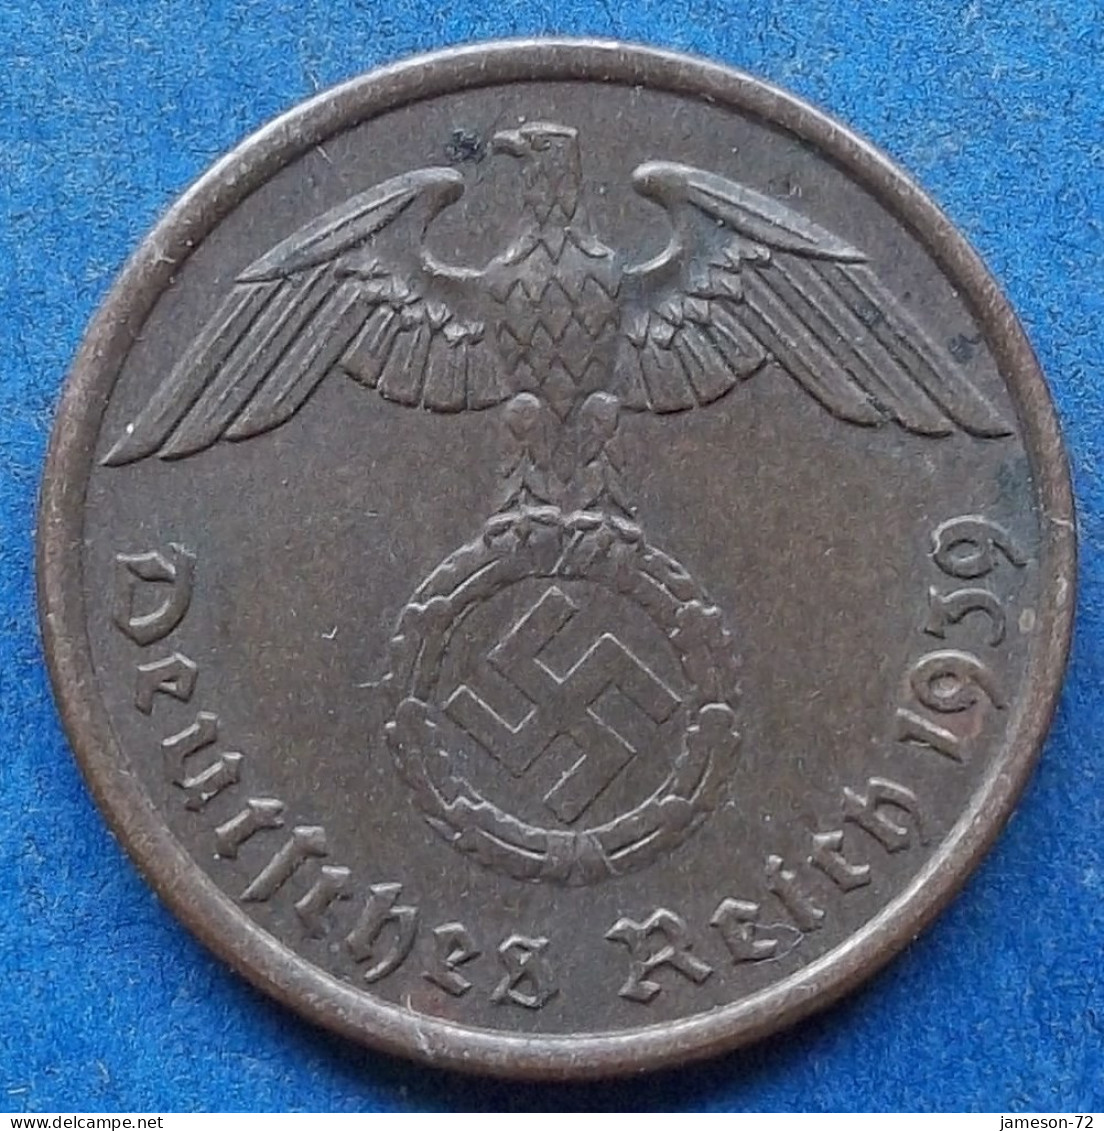 GERMANY - 2 Reichspfennig 1939 A KM# 90 III Reich (1933-1945) - Edelweiss Coins - 2 Reichspfennig